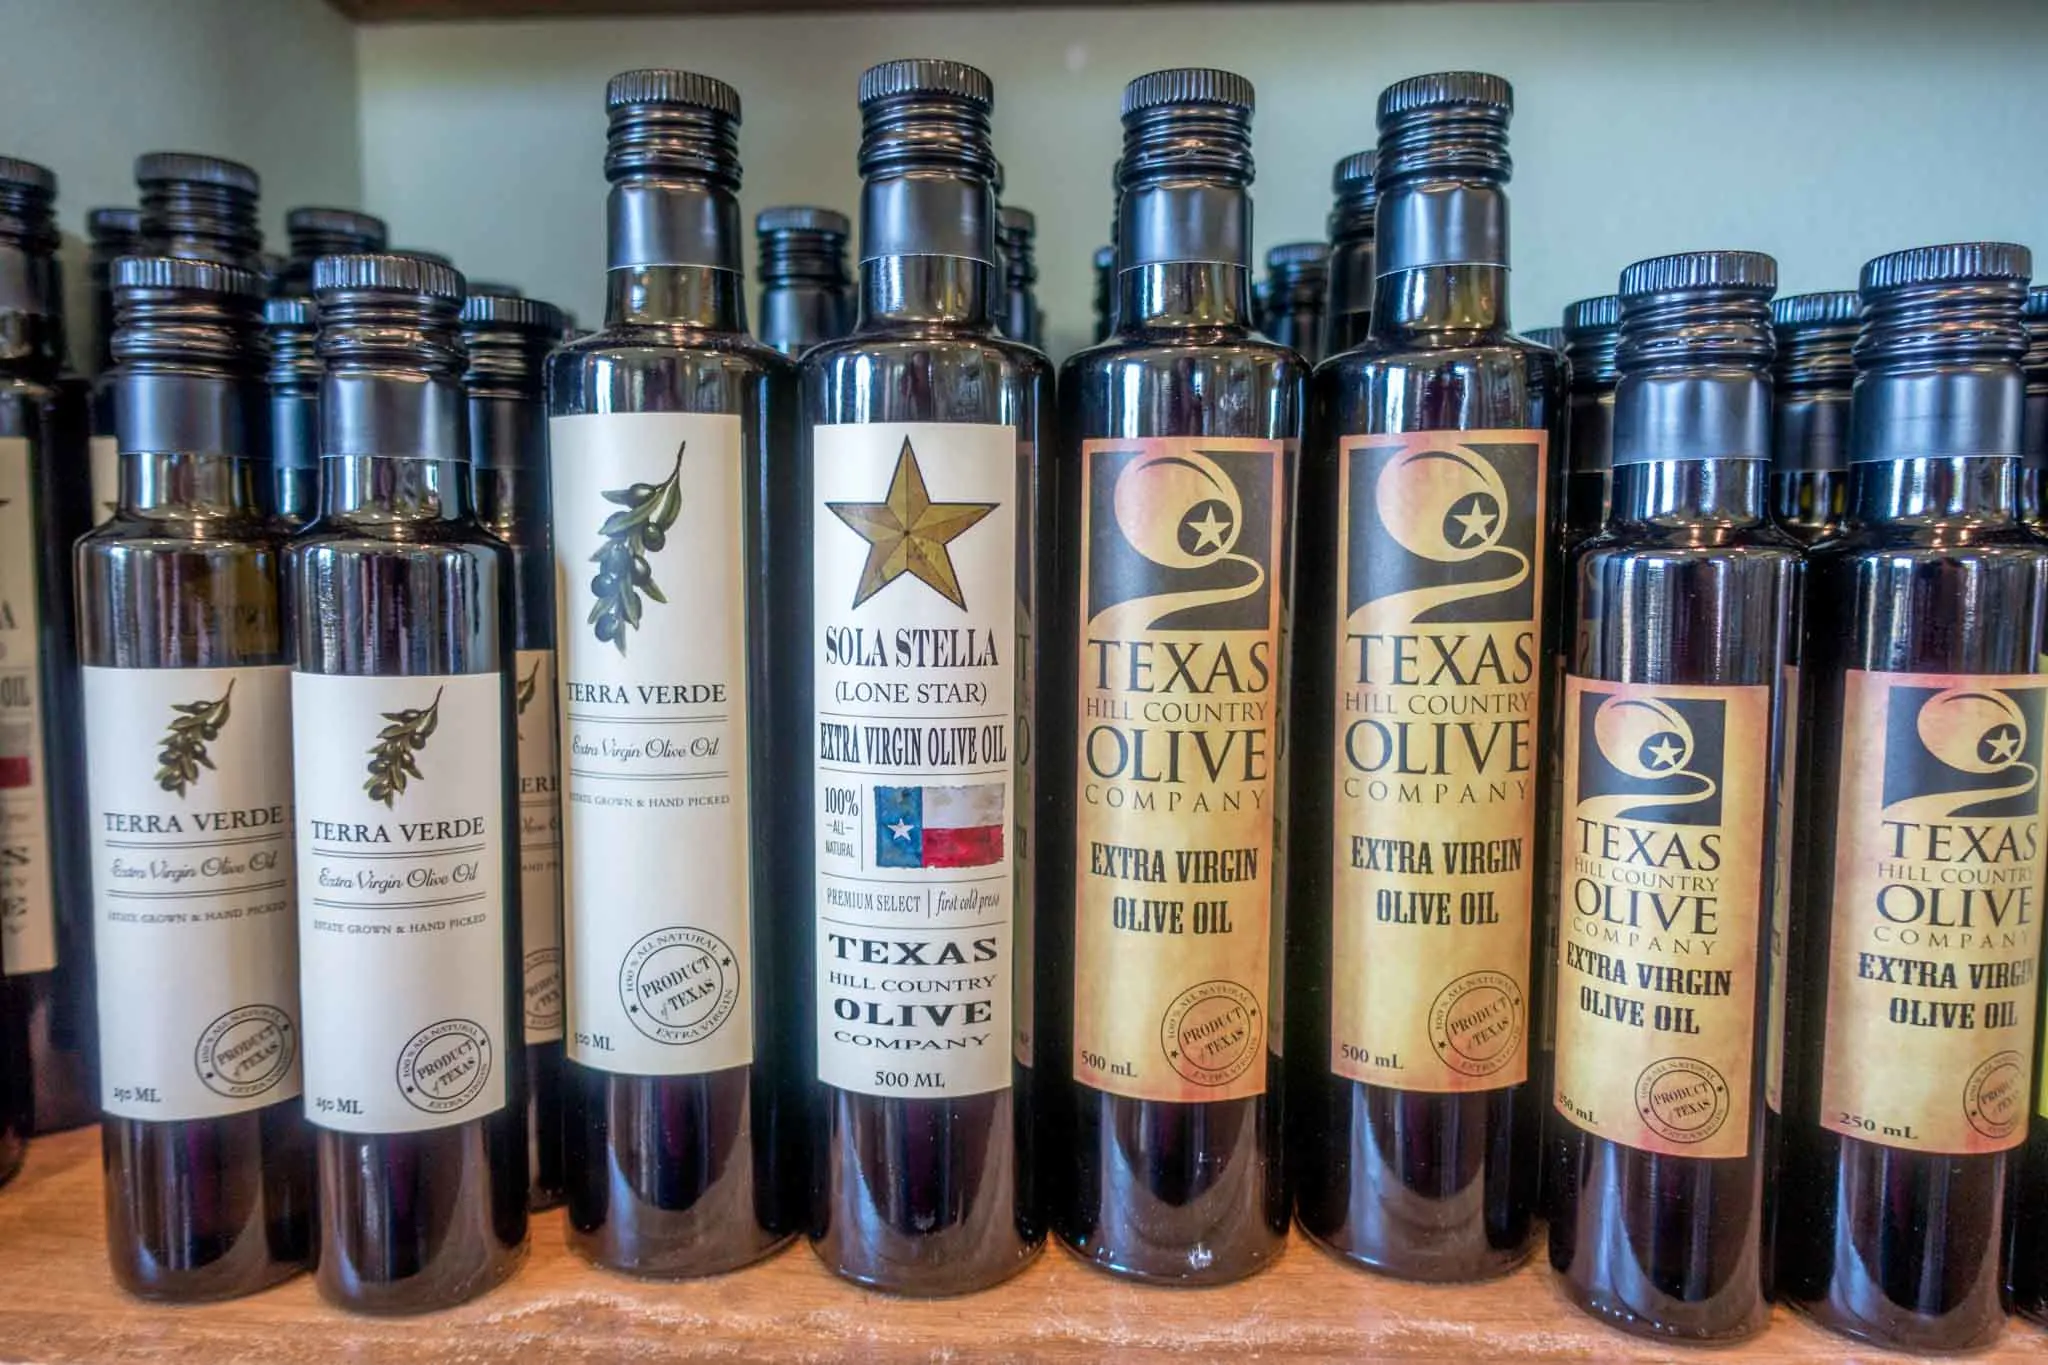 Bottles of olive oil on shelf